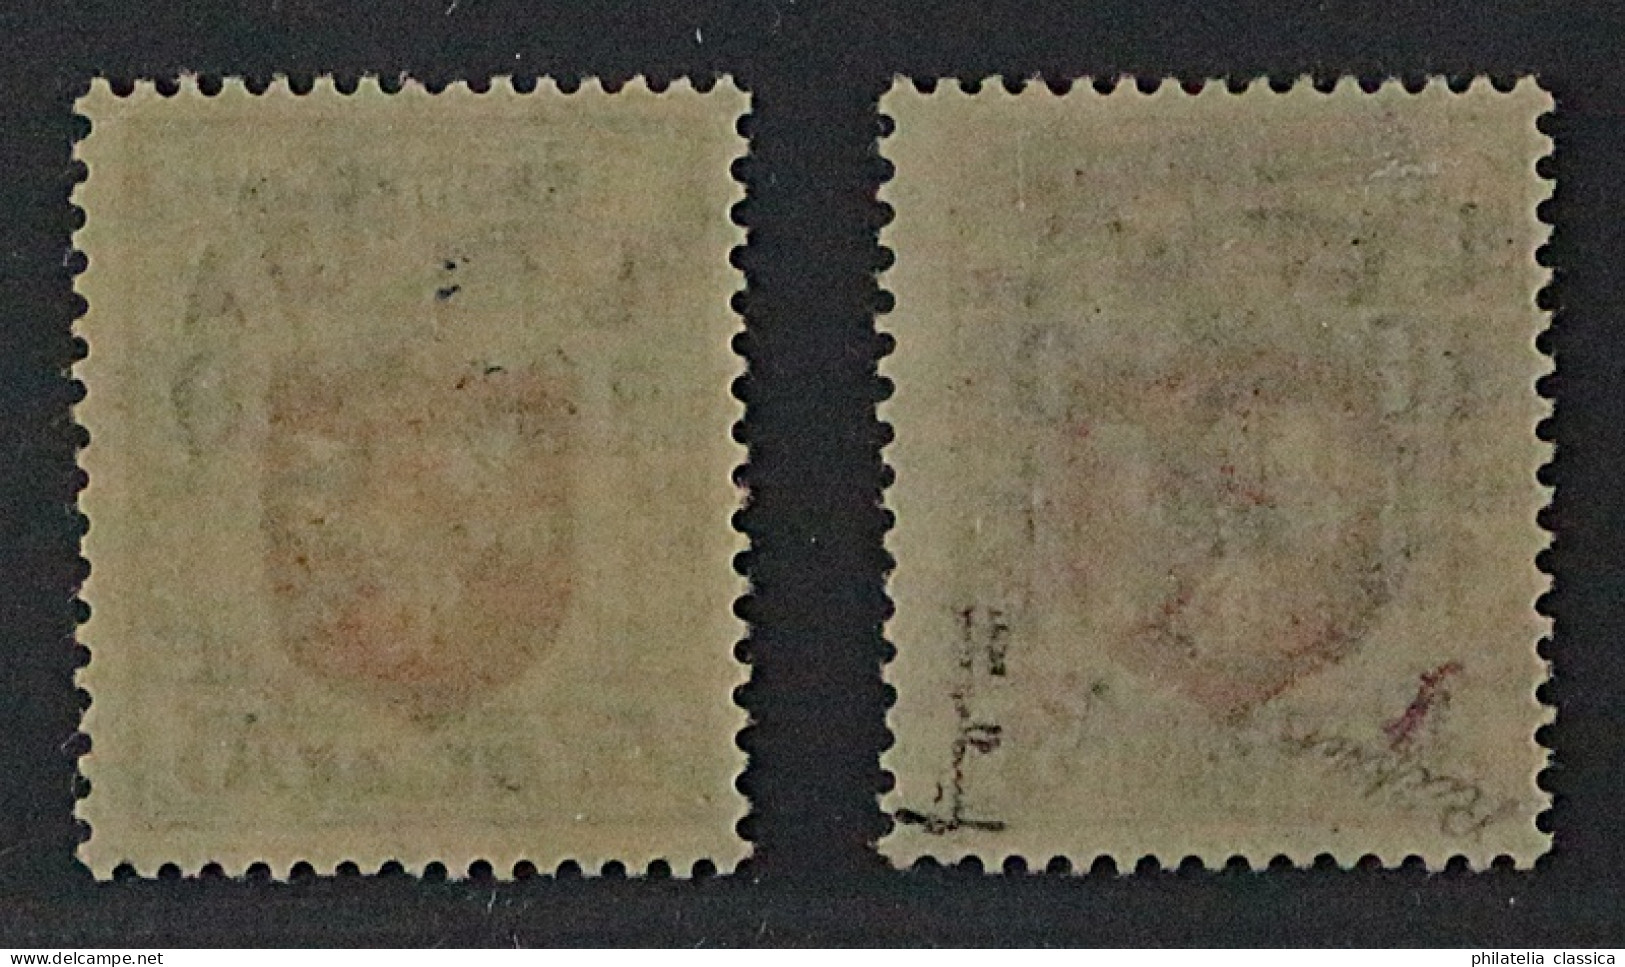 Mittellitauen 12-13 **/* Wappen Spitzenwerte, Auflage 283, Fotoattest KW 6000,-€ - Litauen